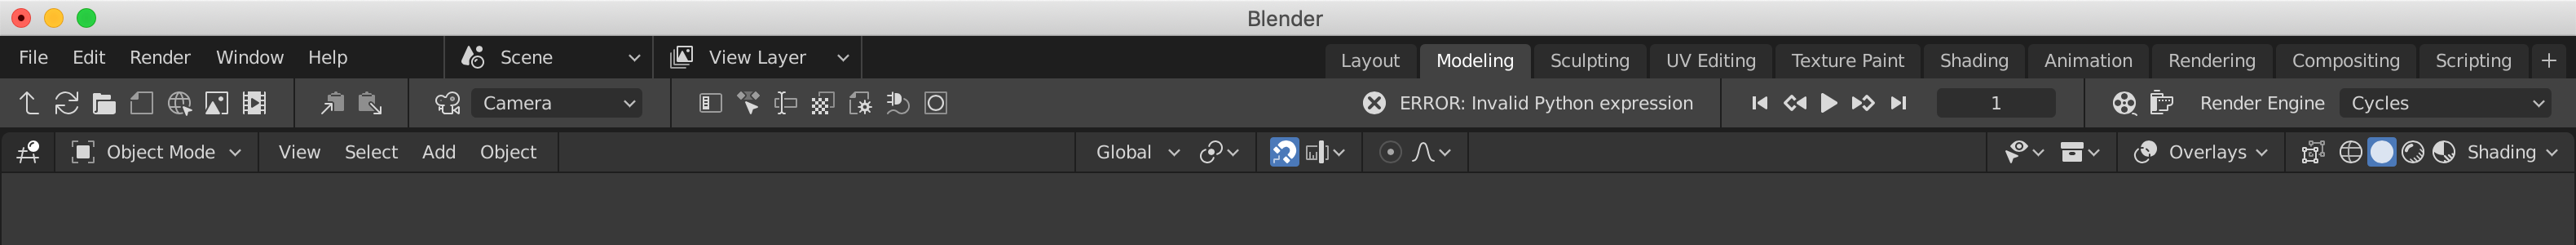 Blender UI Mockups (Updated) - User Feedback - Blender Developer Talk